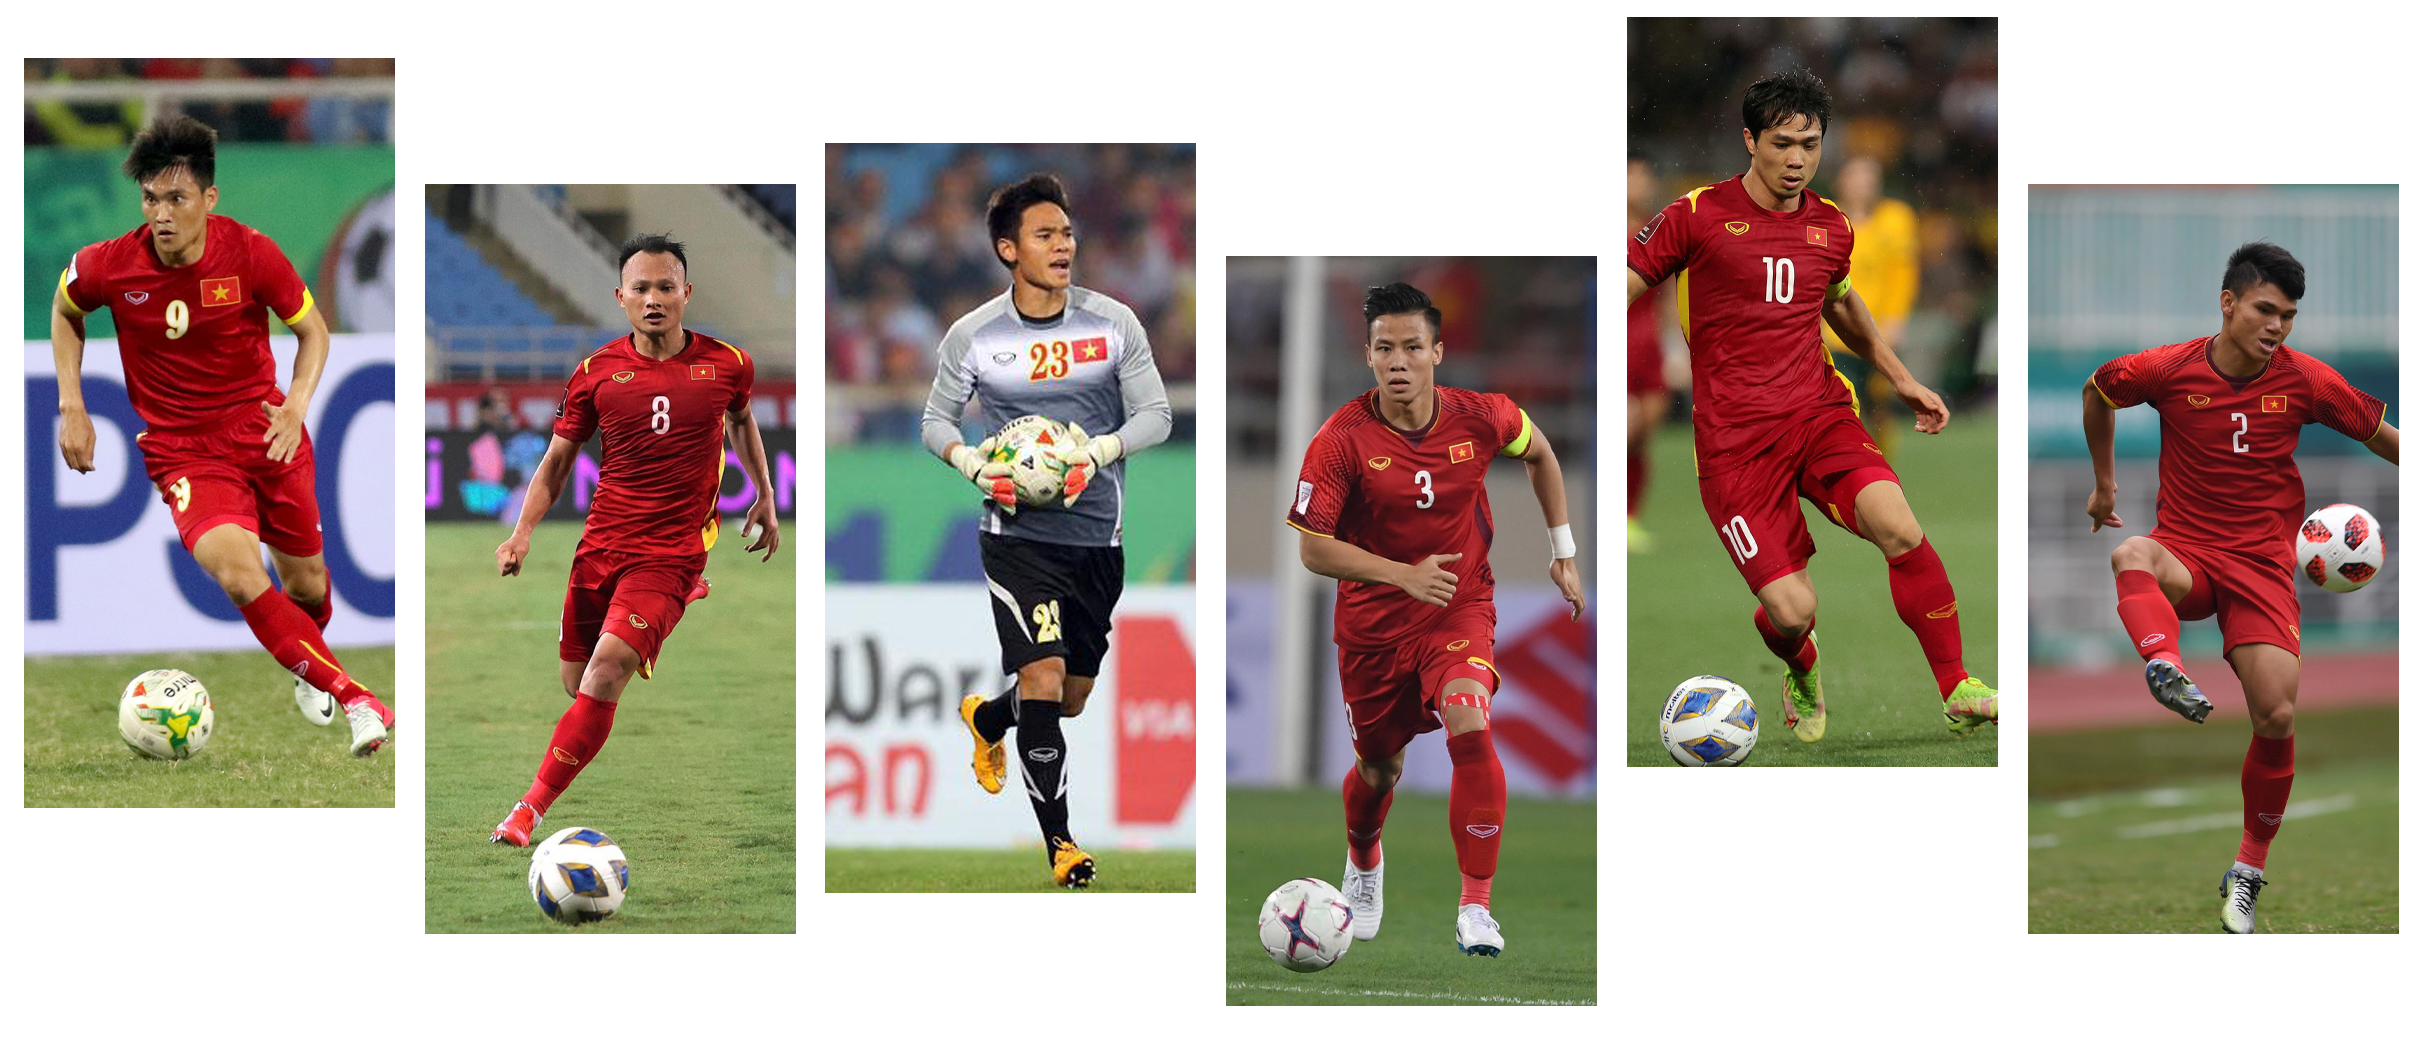 Có rất nhiều cầu thủ trưởng thành từ Giải bóng đá TN-NĐ Cúp Báo Nghệ An và được khoác áo đội tuyển quốc gia.